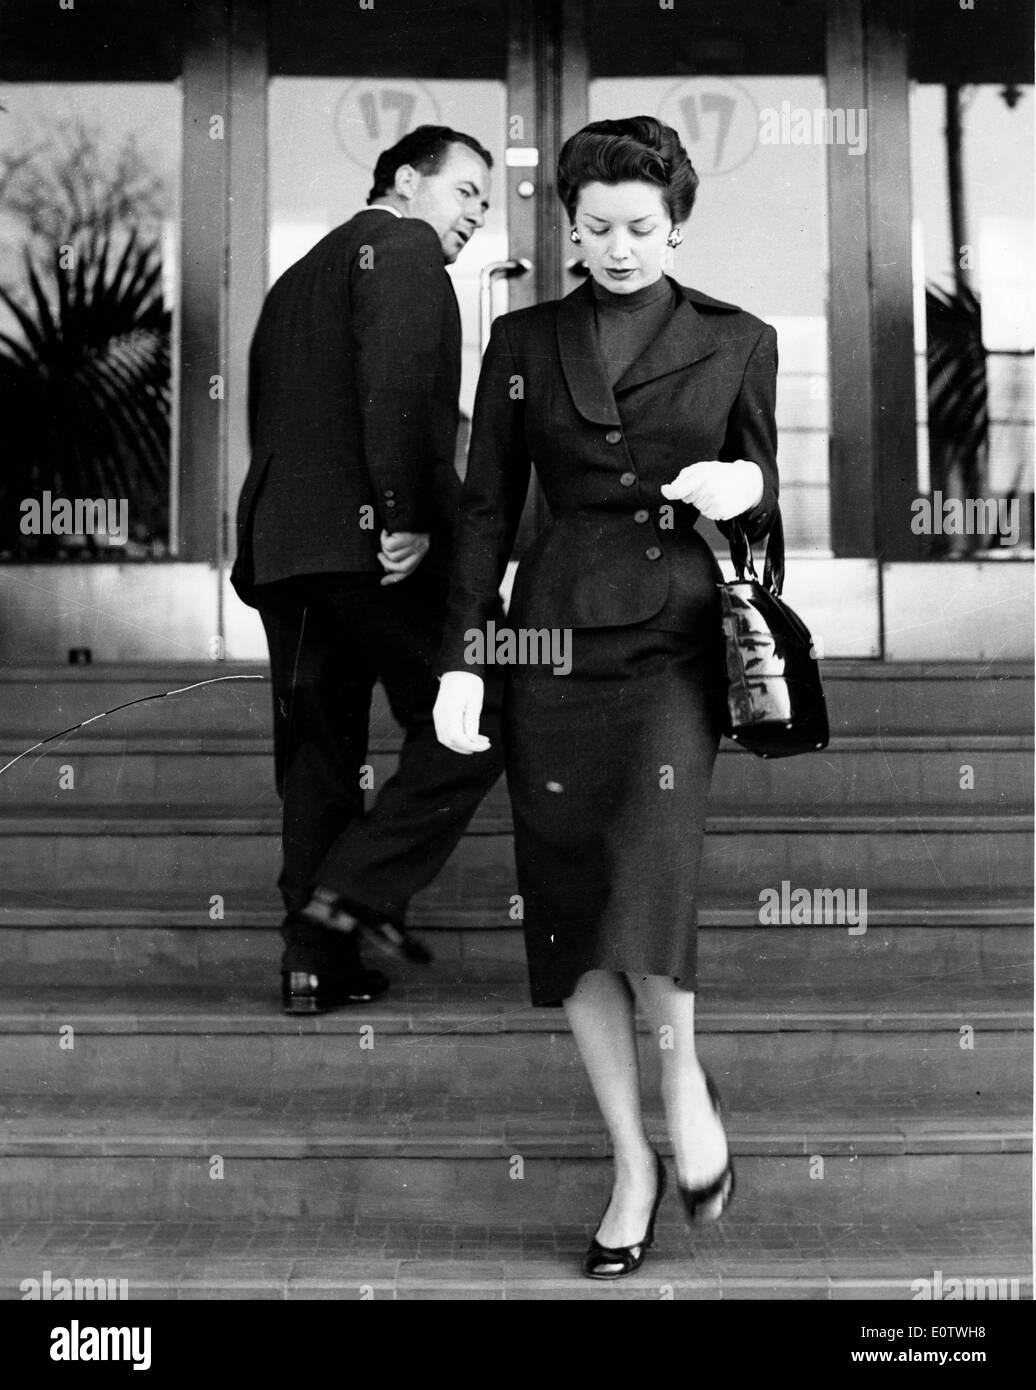 Oct 02, 1960 - Londres, Reino Unido - El Conde de HAREWOOD Foto de stock